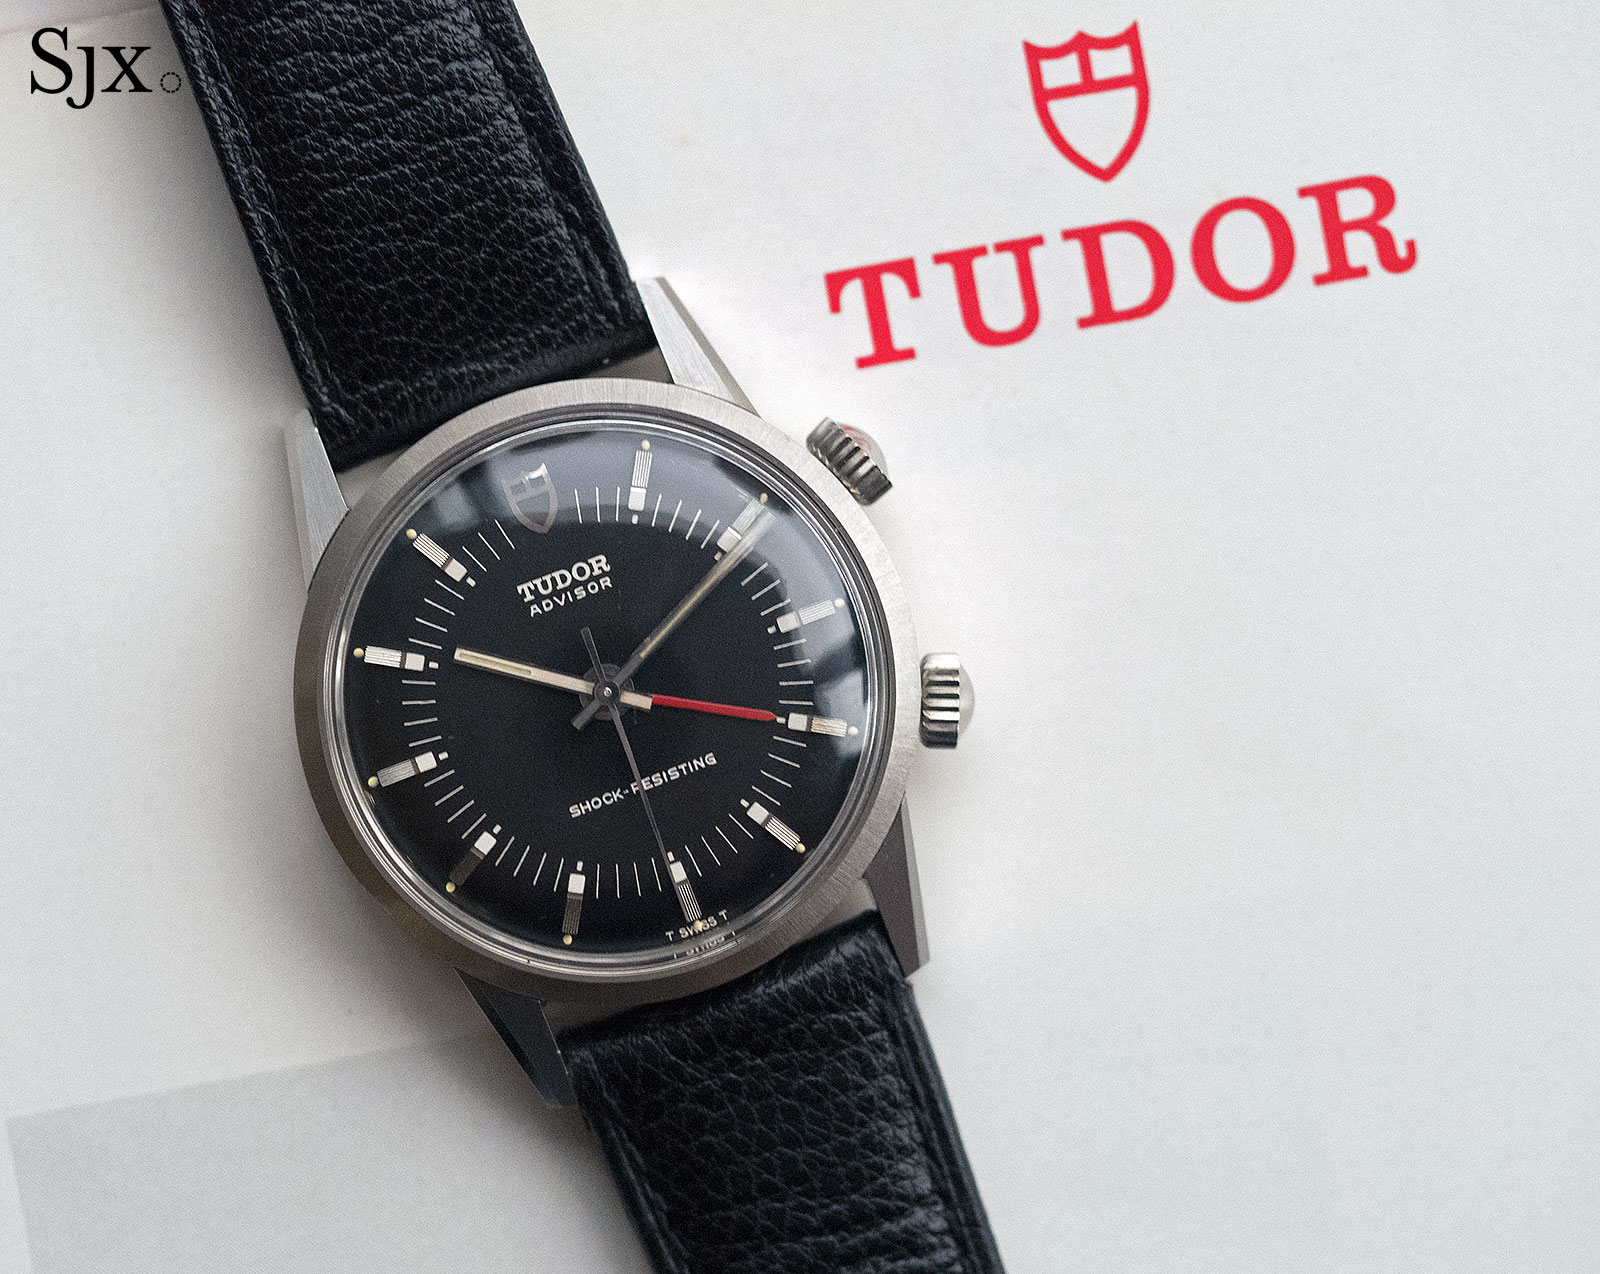 Tudor Advisor alarm ref. 10050 1